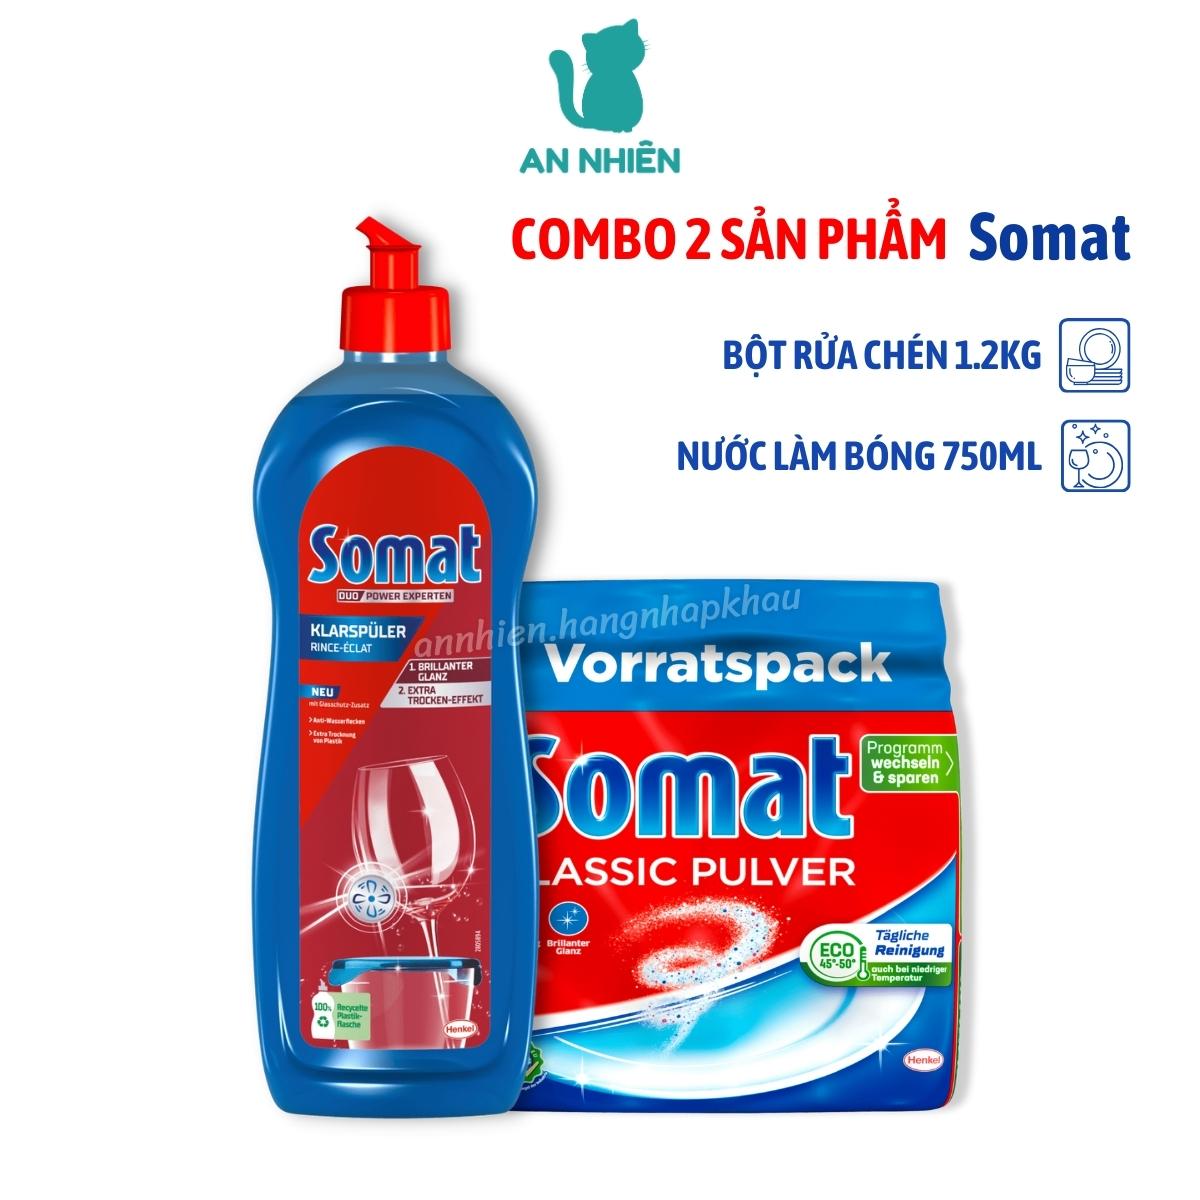 Combo bột rửa chén Somat 1.2kg và dầu bóng Somat 750ml của Đức